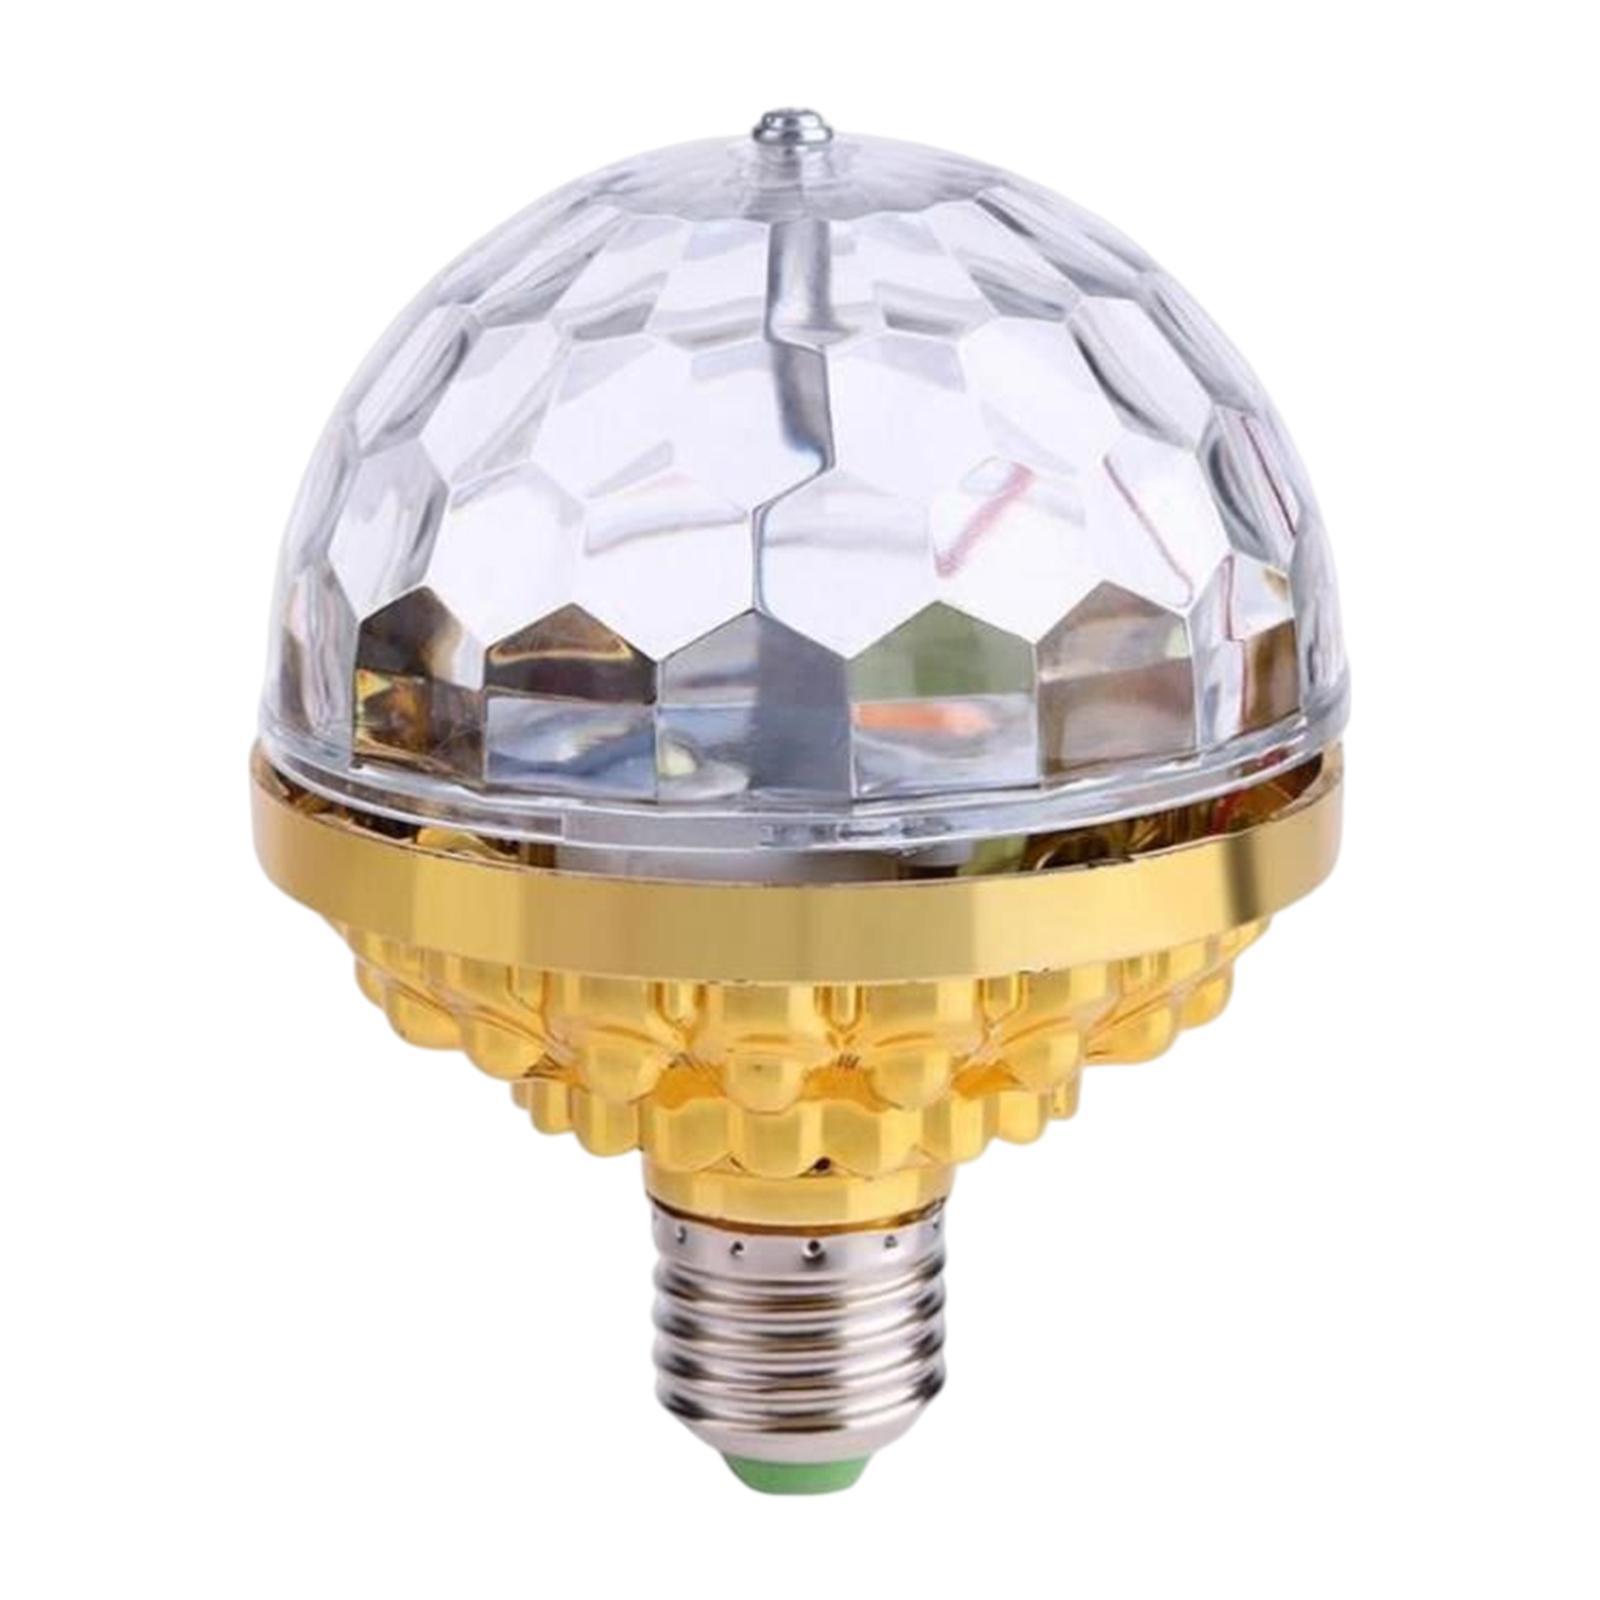 Những loại light bulbs decorative được ưa chuộng nhất hiện nay